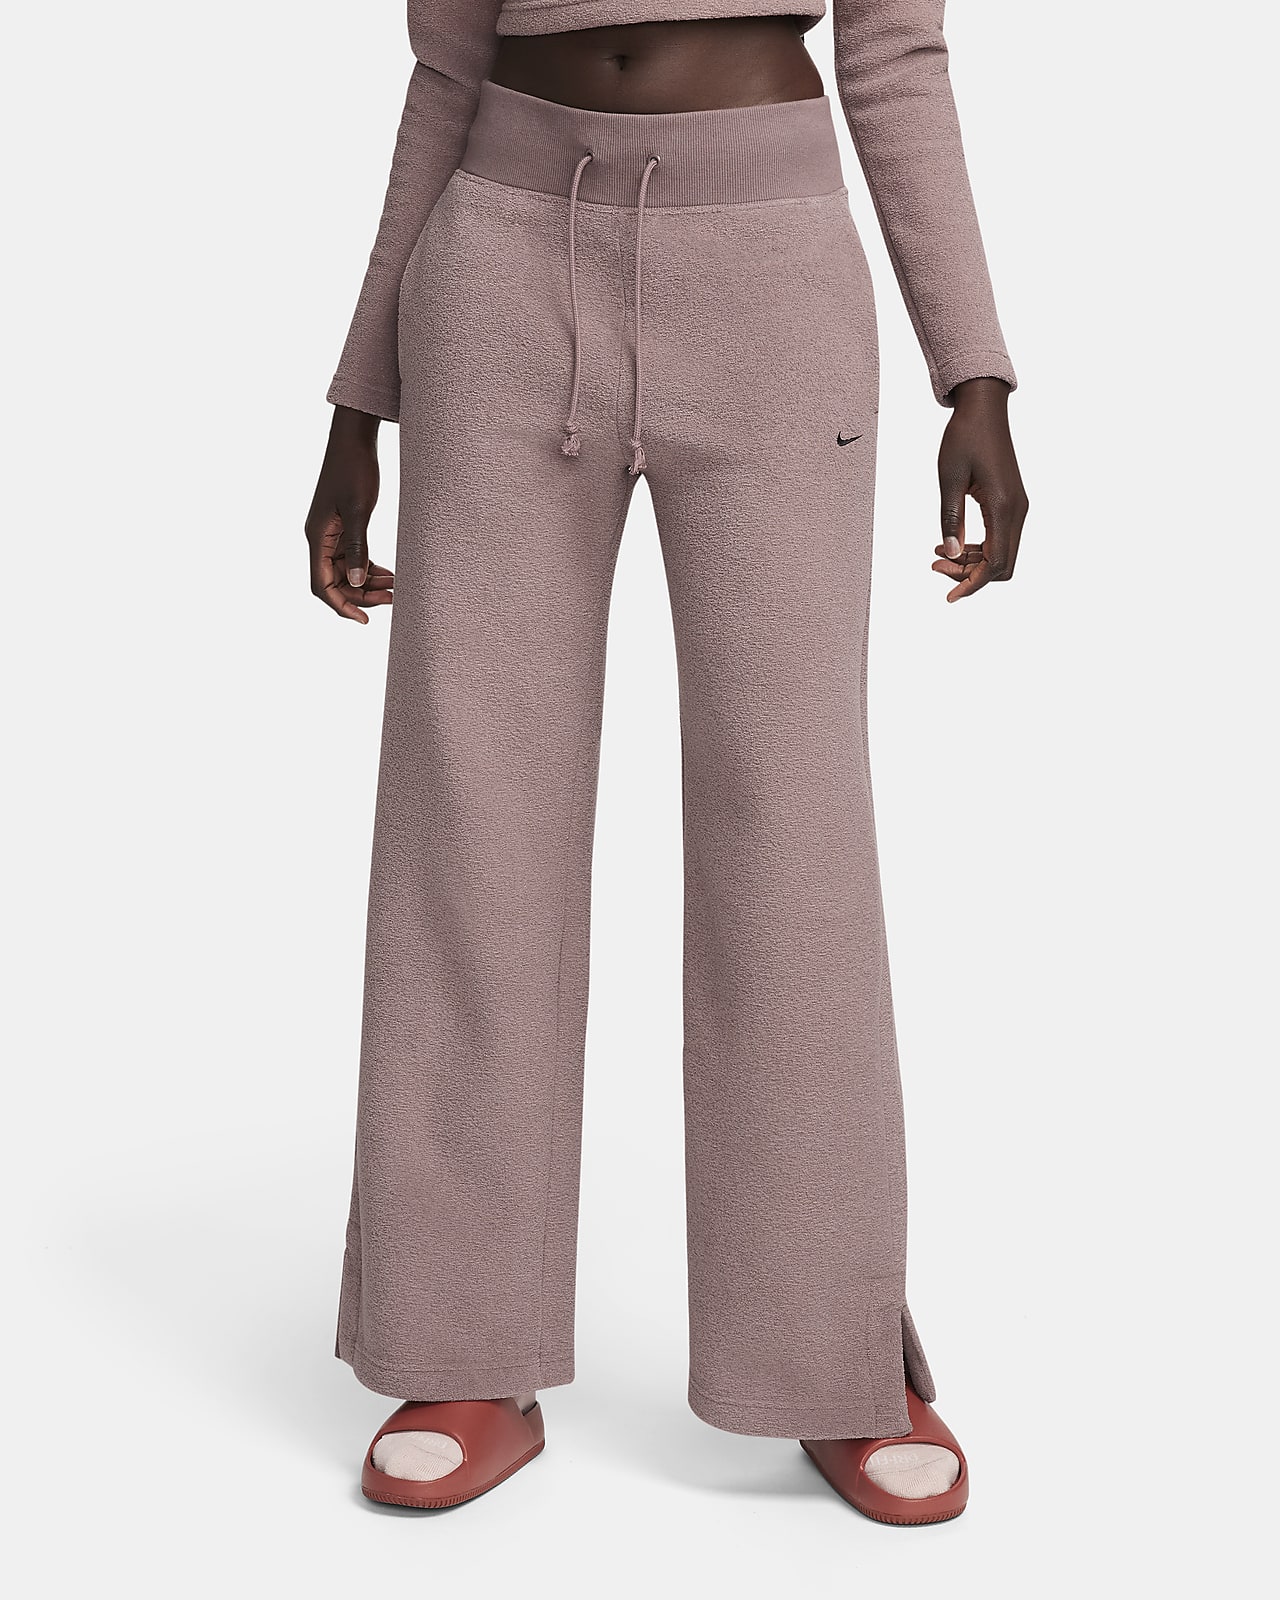 Nike Sportswear Phoenix Plush magas derekú, széles szárú, kényelmes női polárnadrág